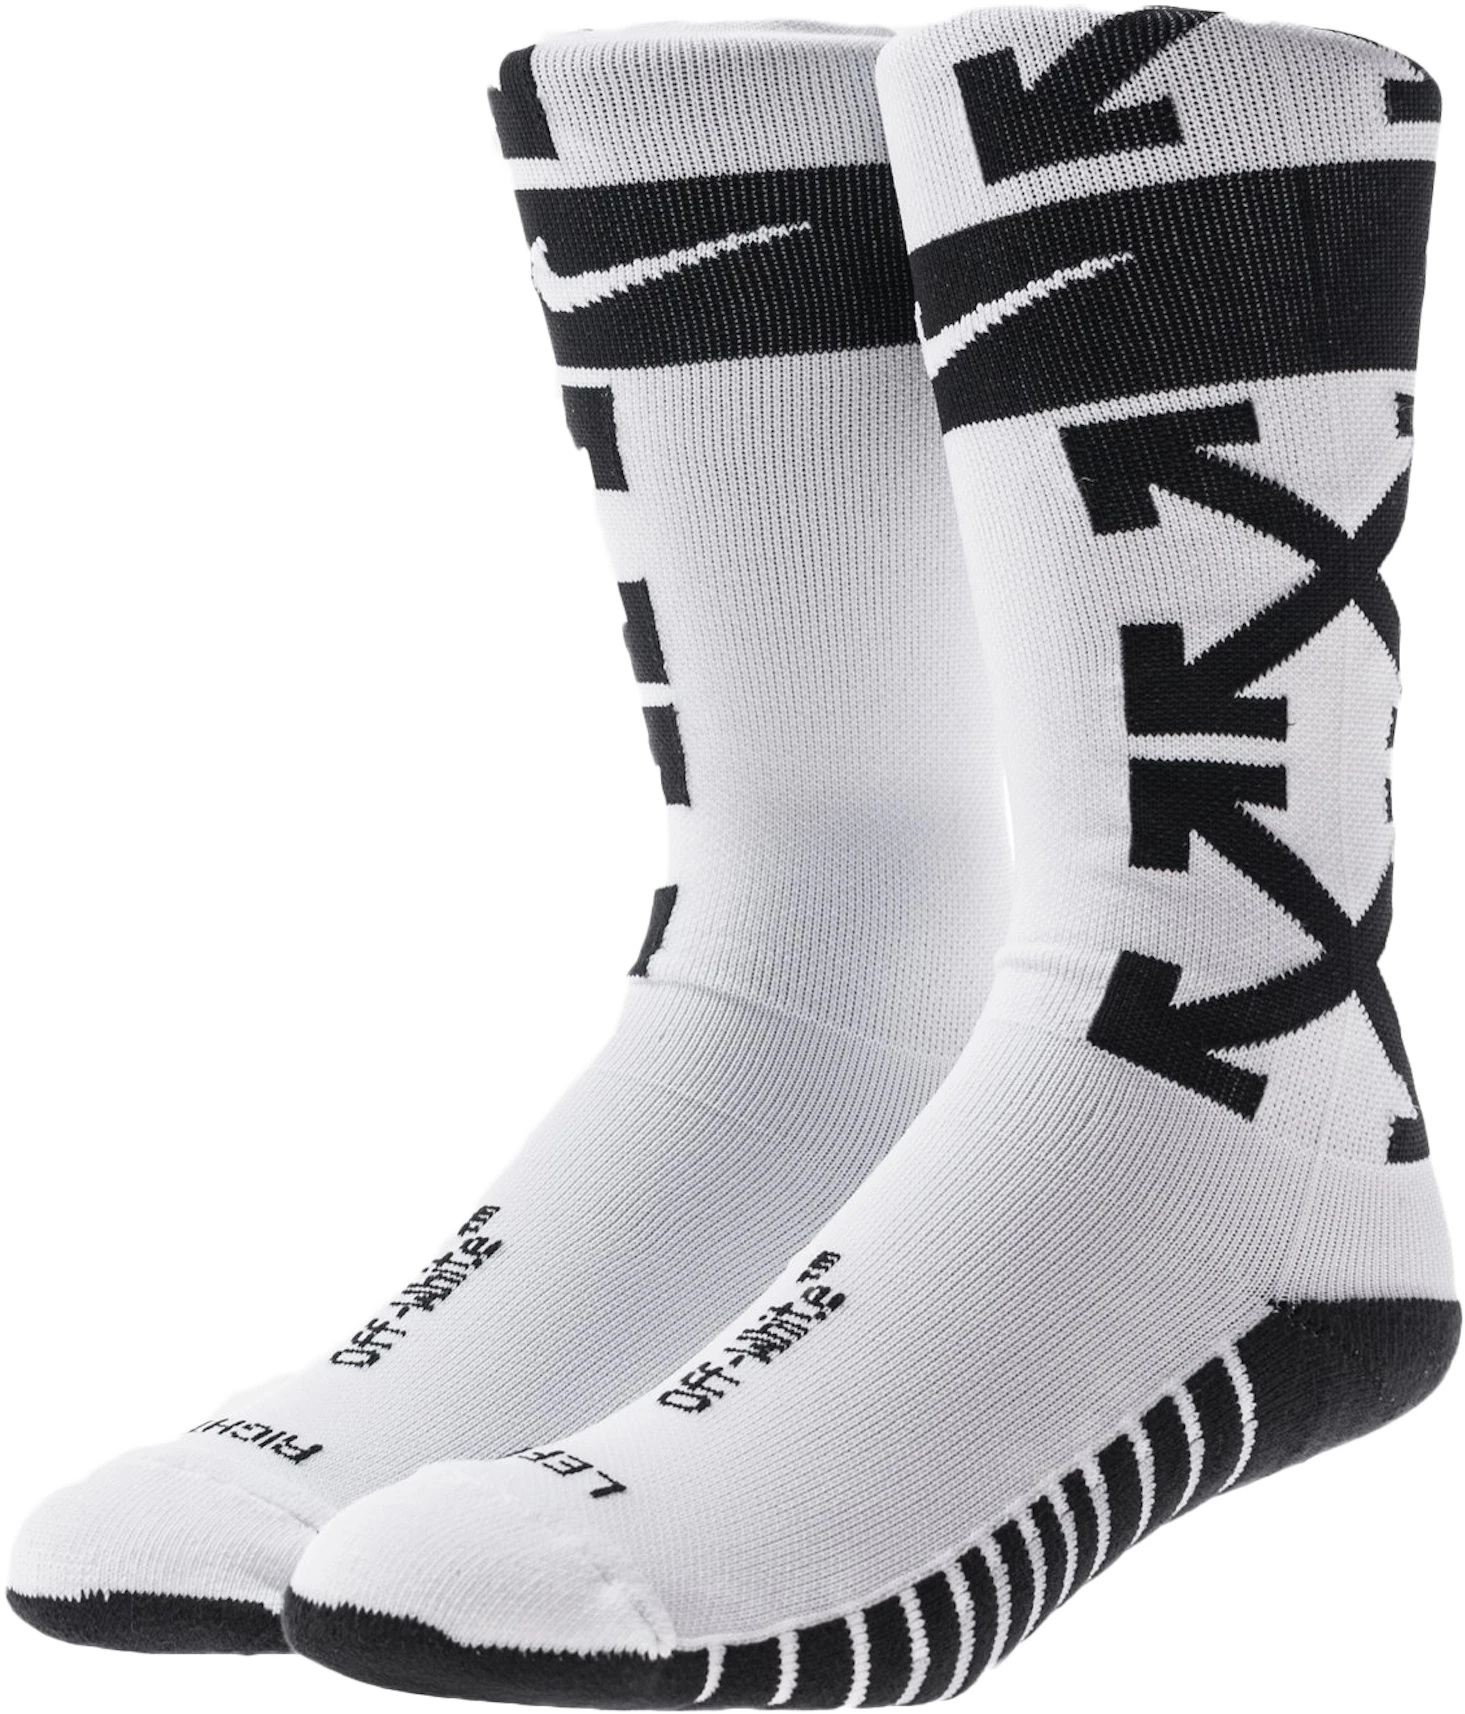 Nikelab OFF-WHITE FB Socks White SS18 - ES